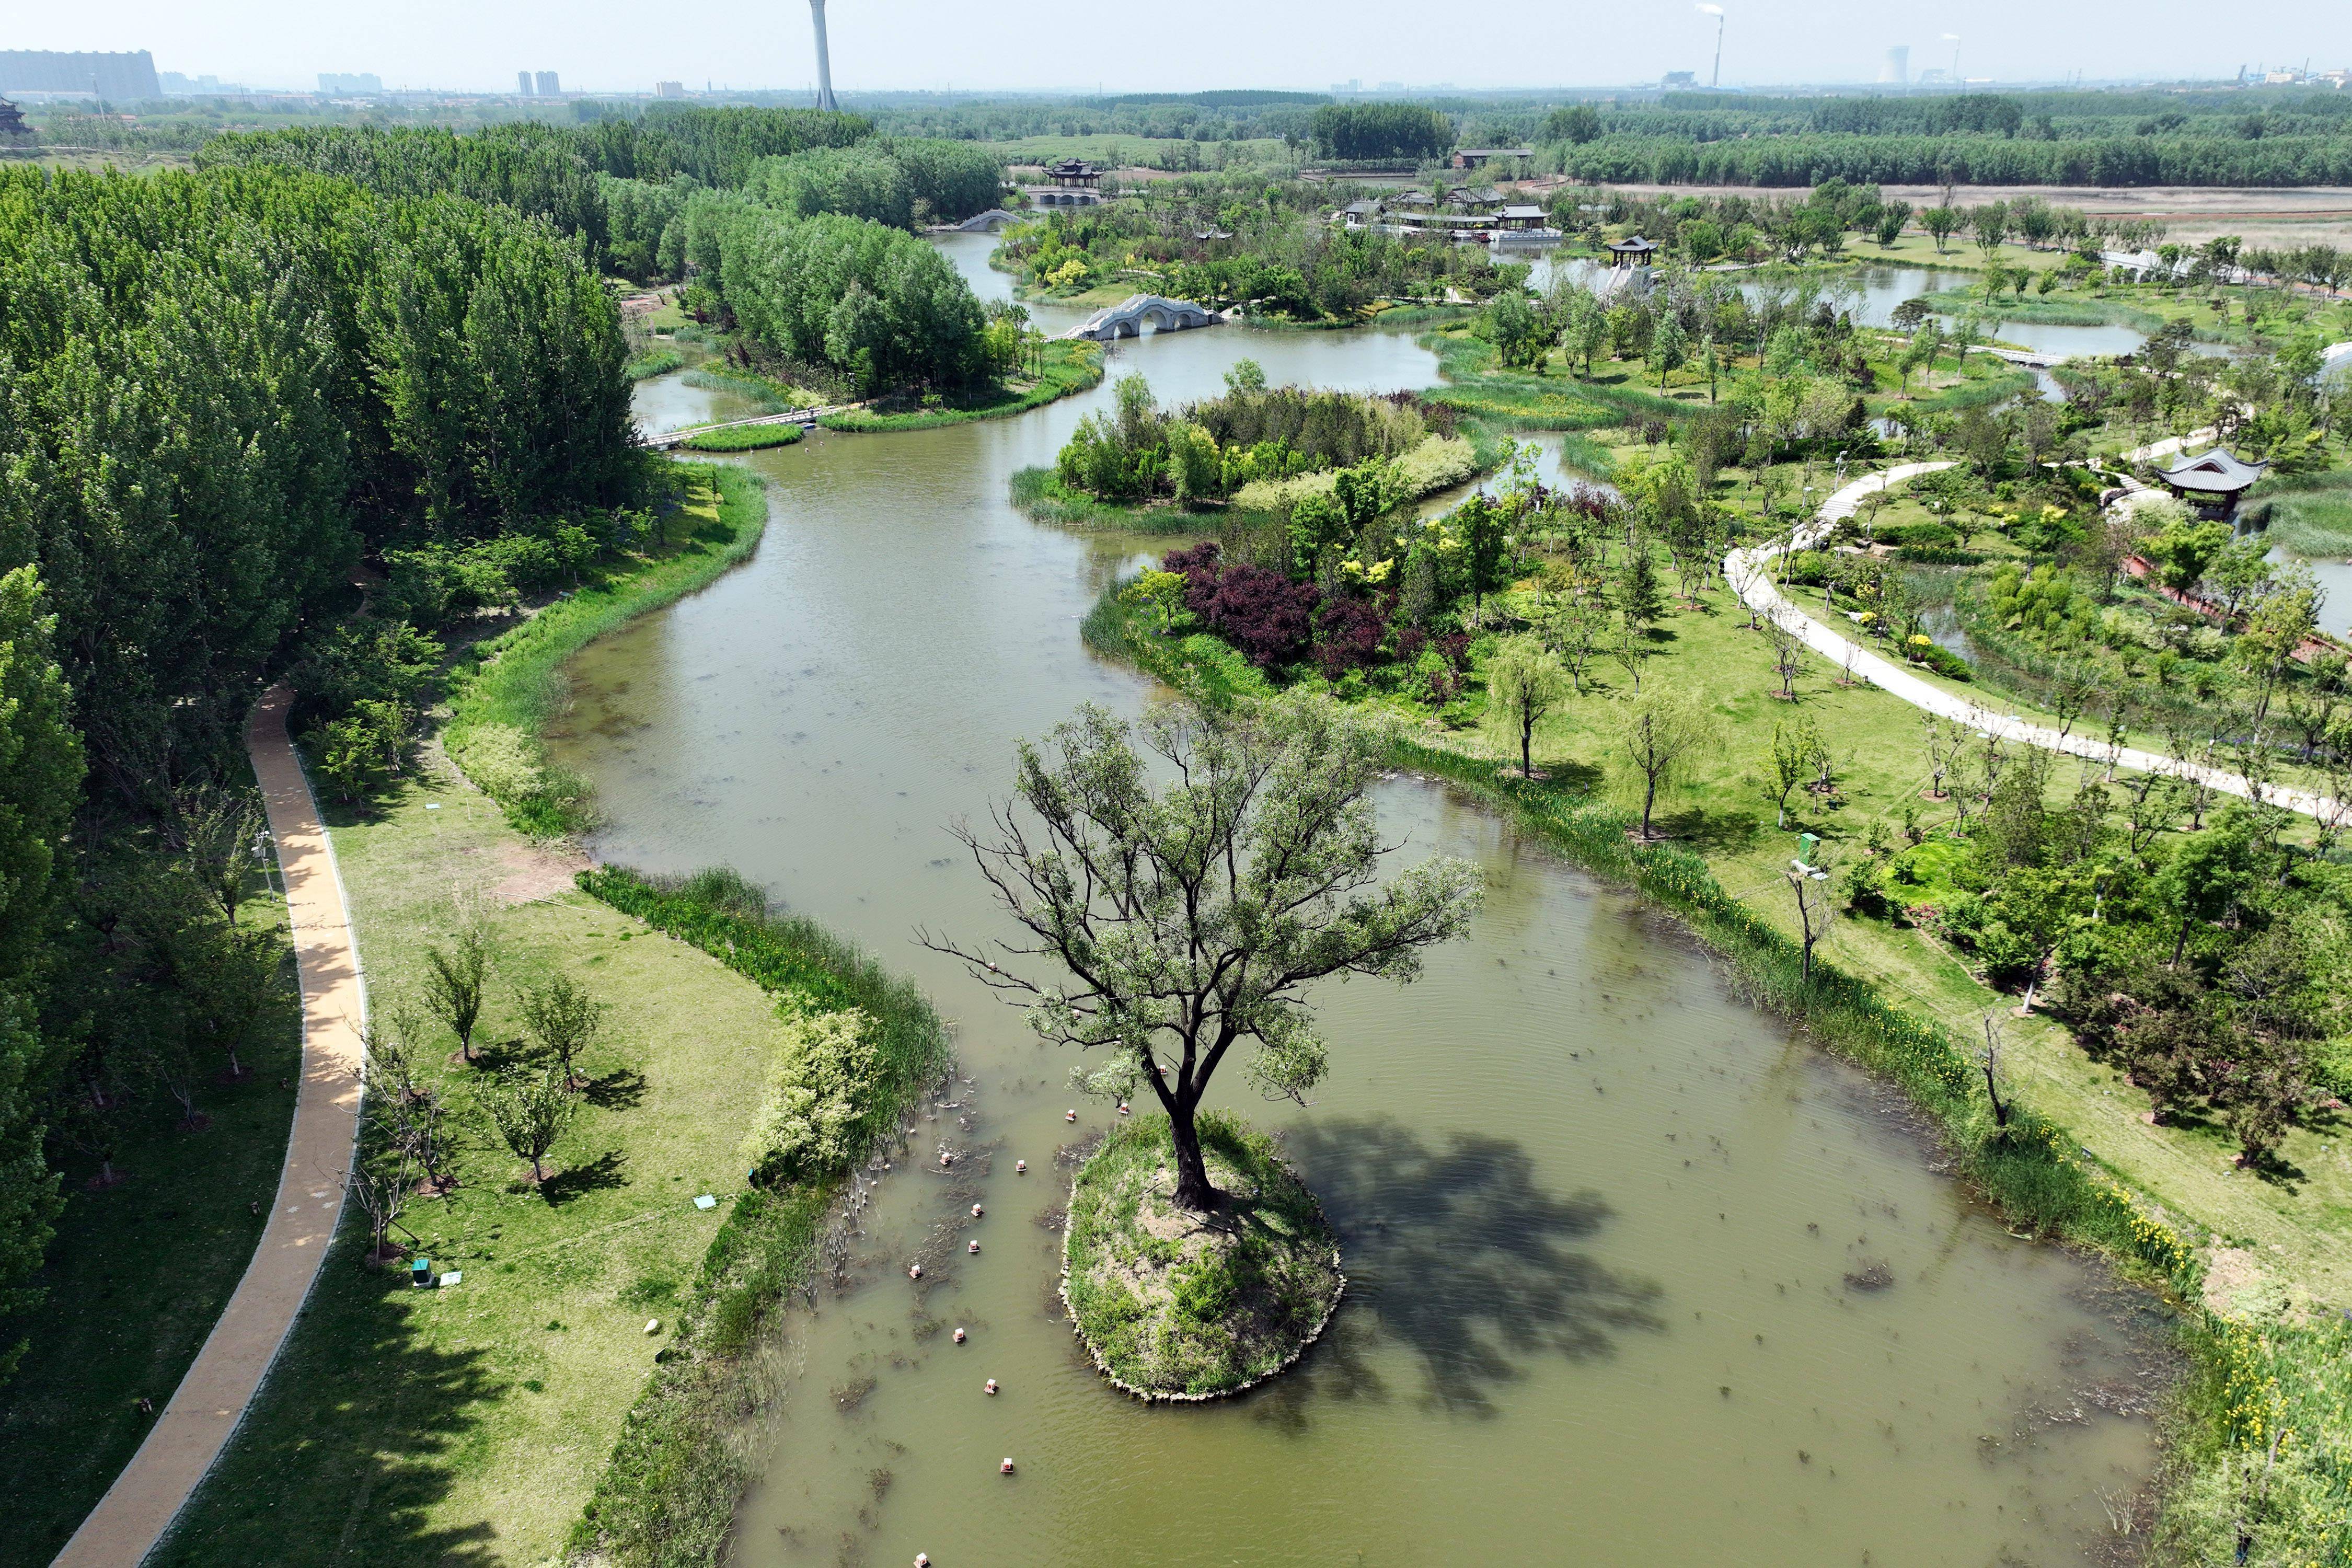 漳泽湖湿地图片